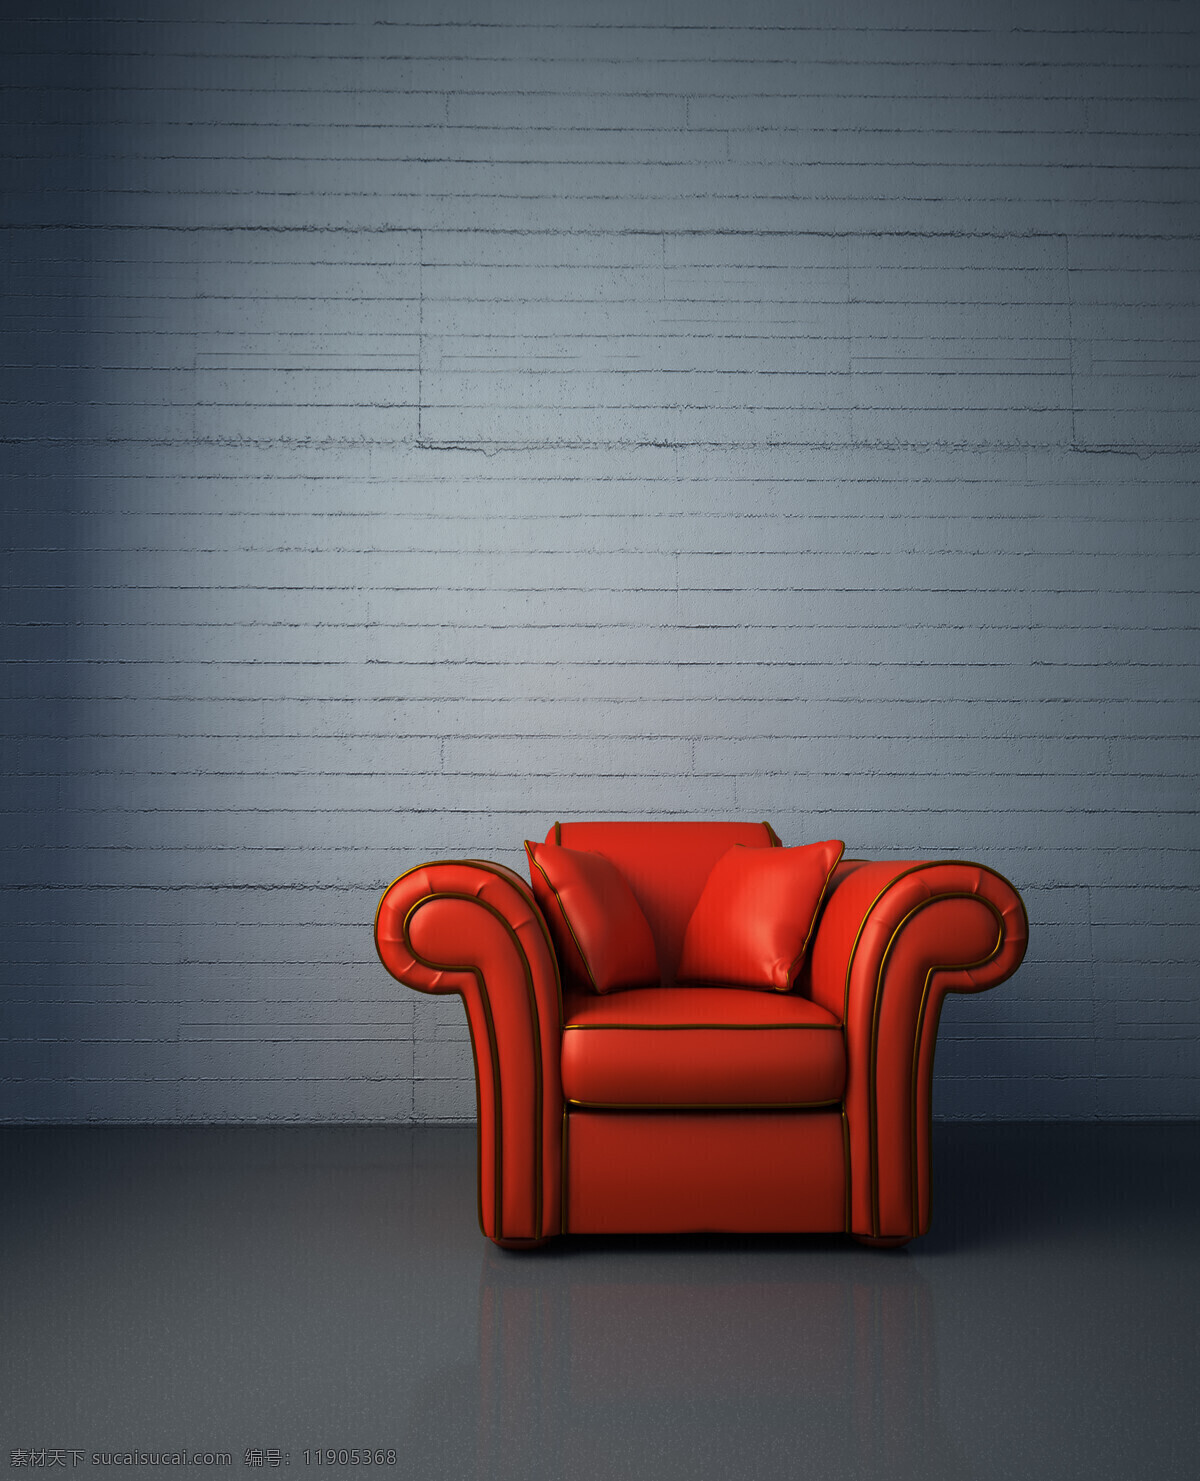 红色 皮沙发 室内装饰 室内 沙发 红色沙发 一个沙发 靠垫 红色皮靠垫 高清图片 家具电器 生活百科